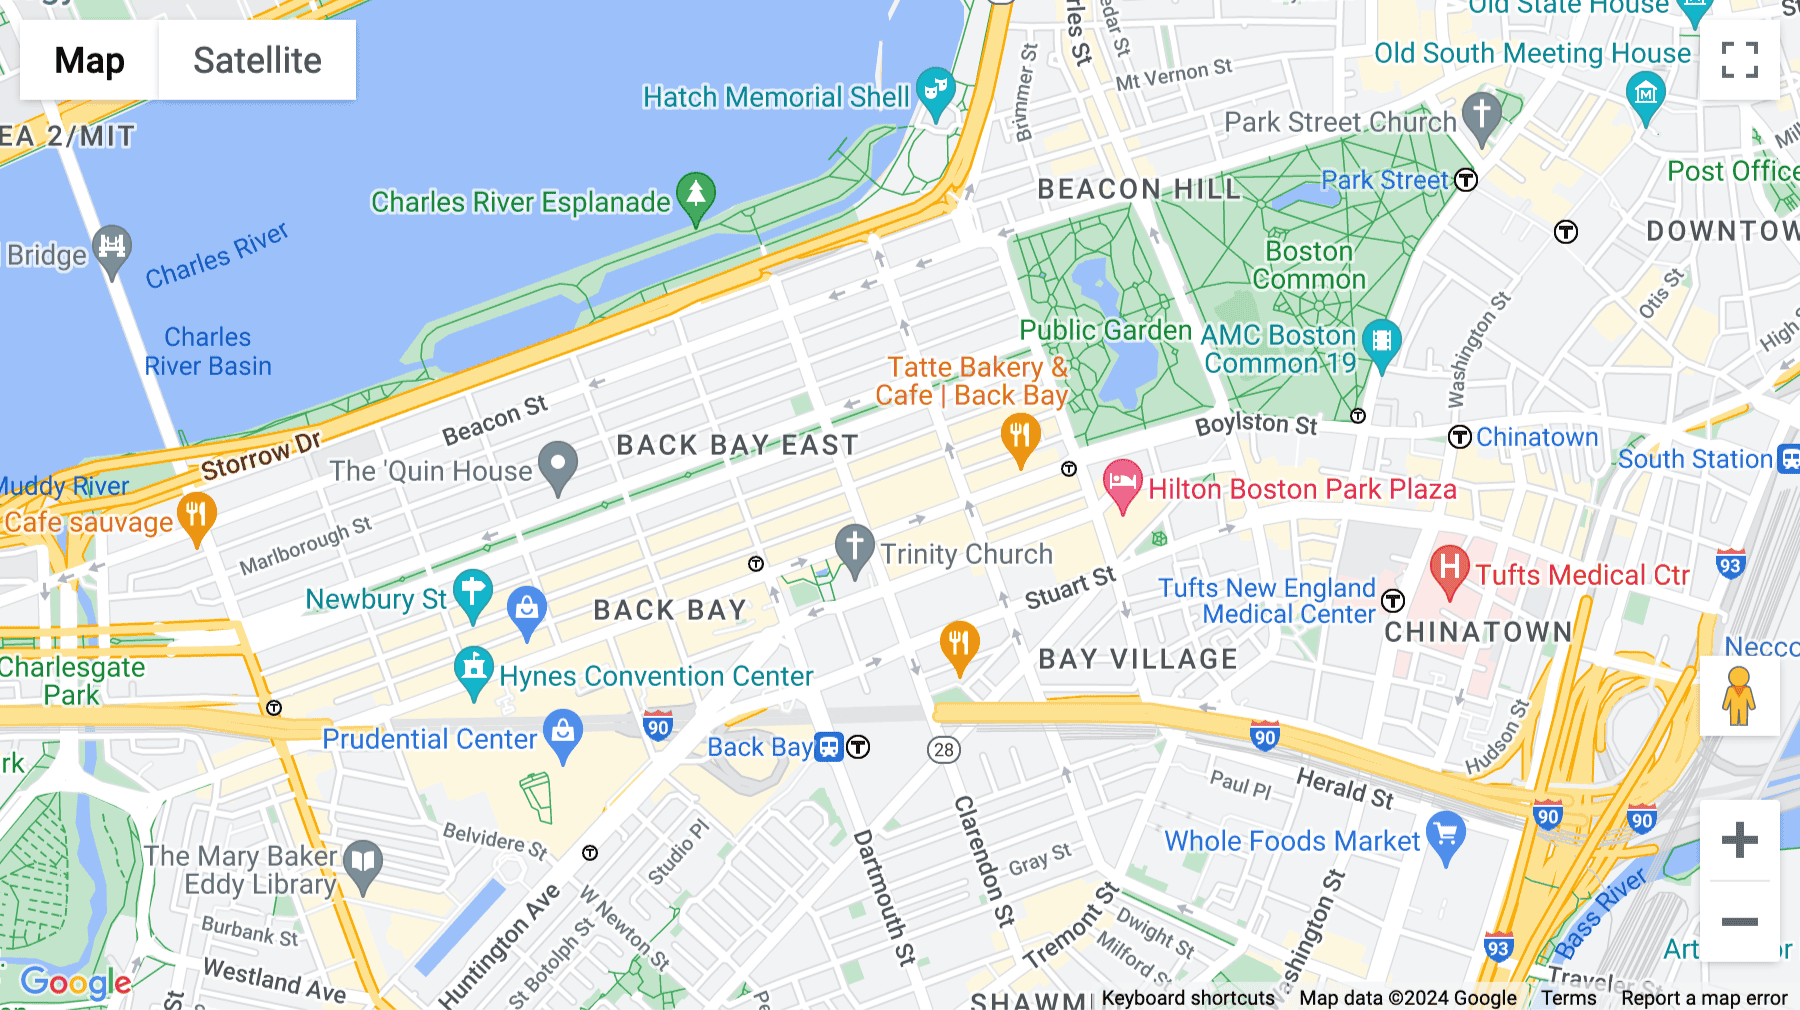 Click for interative map of 501 Boylston, Boston